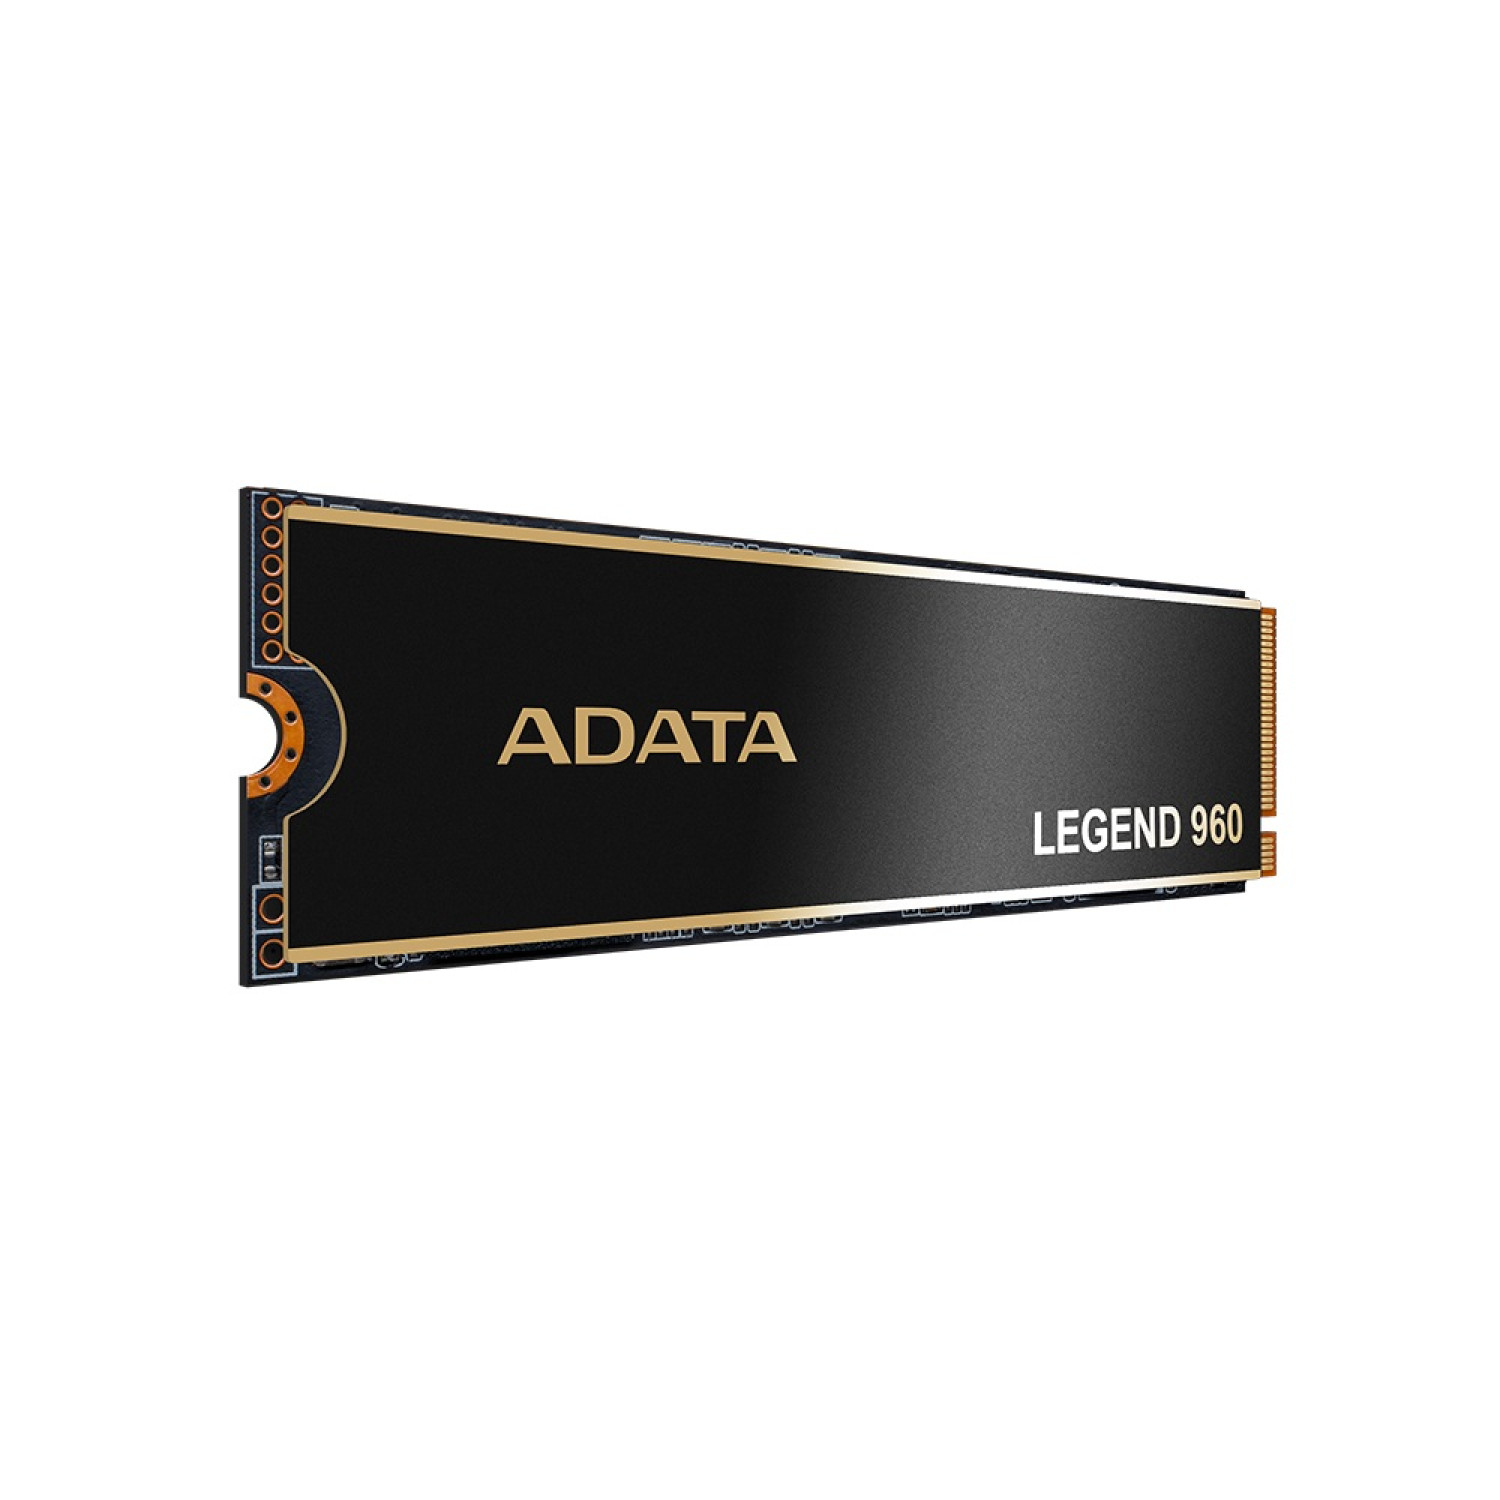 حافظه اس اس دی ADATA Legend 960 1TB-3